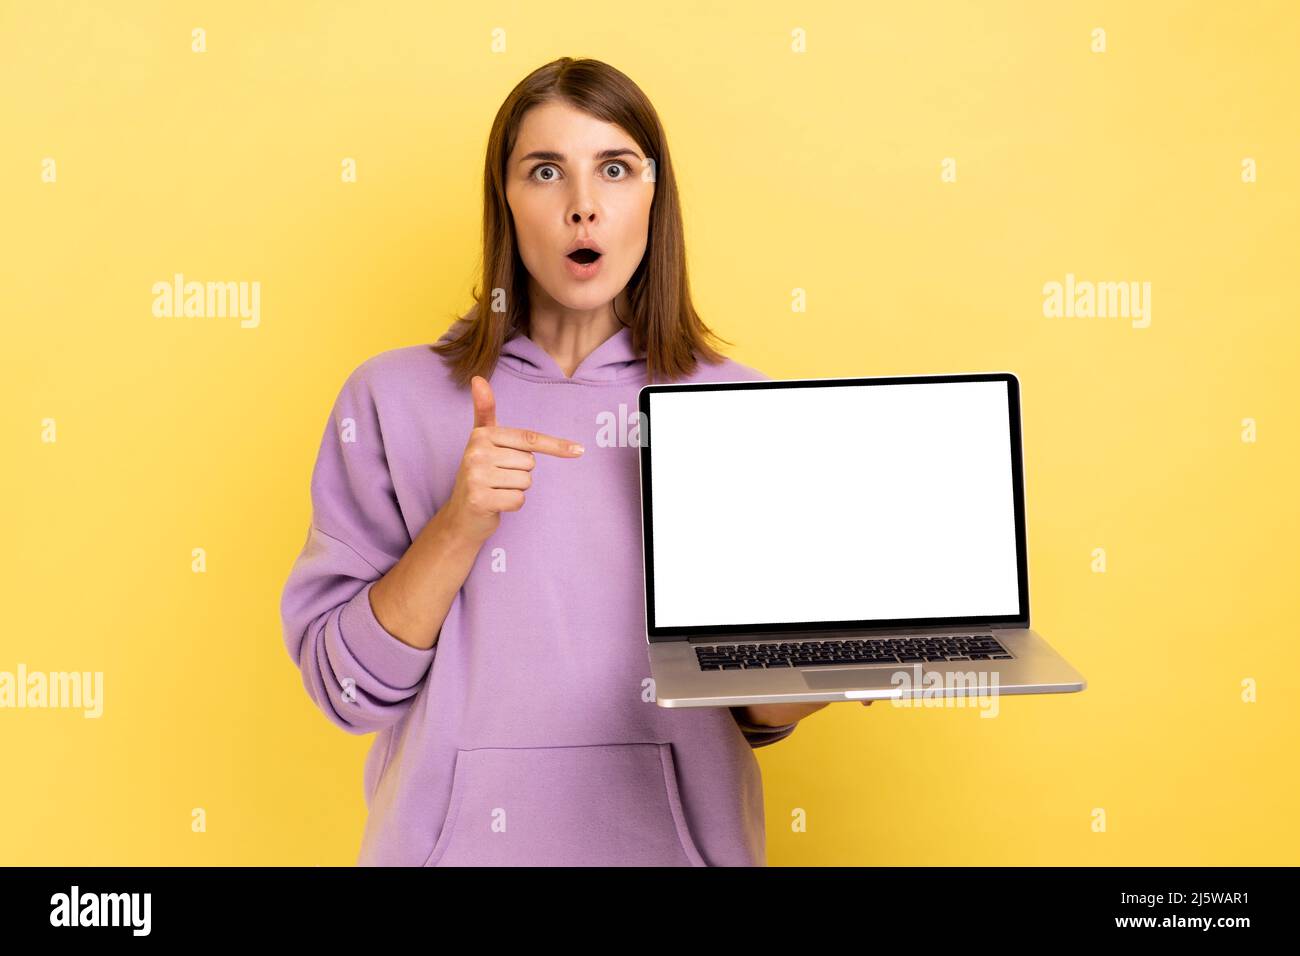 Porträt einer überraschten dunkelhaarigen Frau mit großen Augen, die mit dem Finger nach oben zeigt und einen Laptop mit leerem Bildschirm hält, eine Idee hat und einen violetten Hoodie trägt. Innenaufnahme des Studios isoliert auf gelbem Hintergrund. Stockfoto